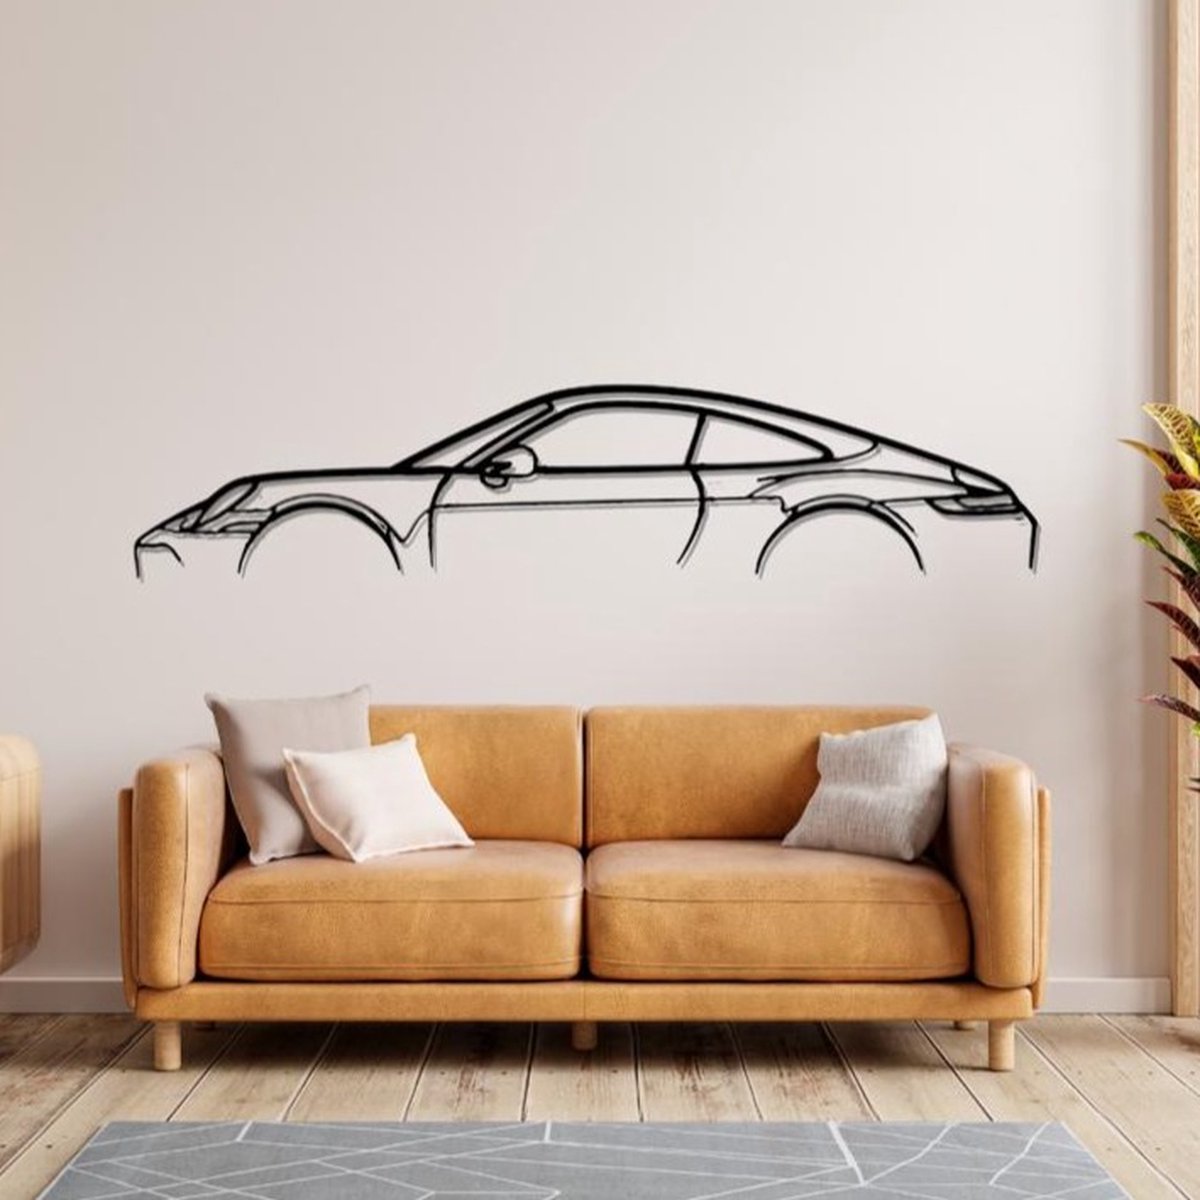 Porsche - 911 - Métal - Décoration murale - Voiture - 60cm X 15cm -  Décoration murale